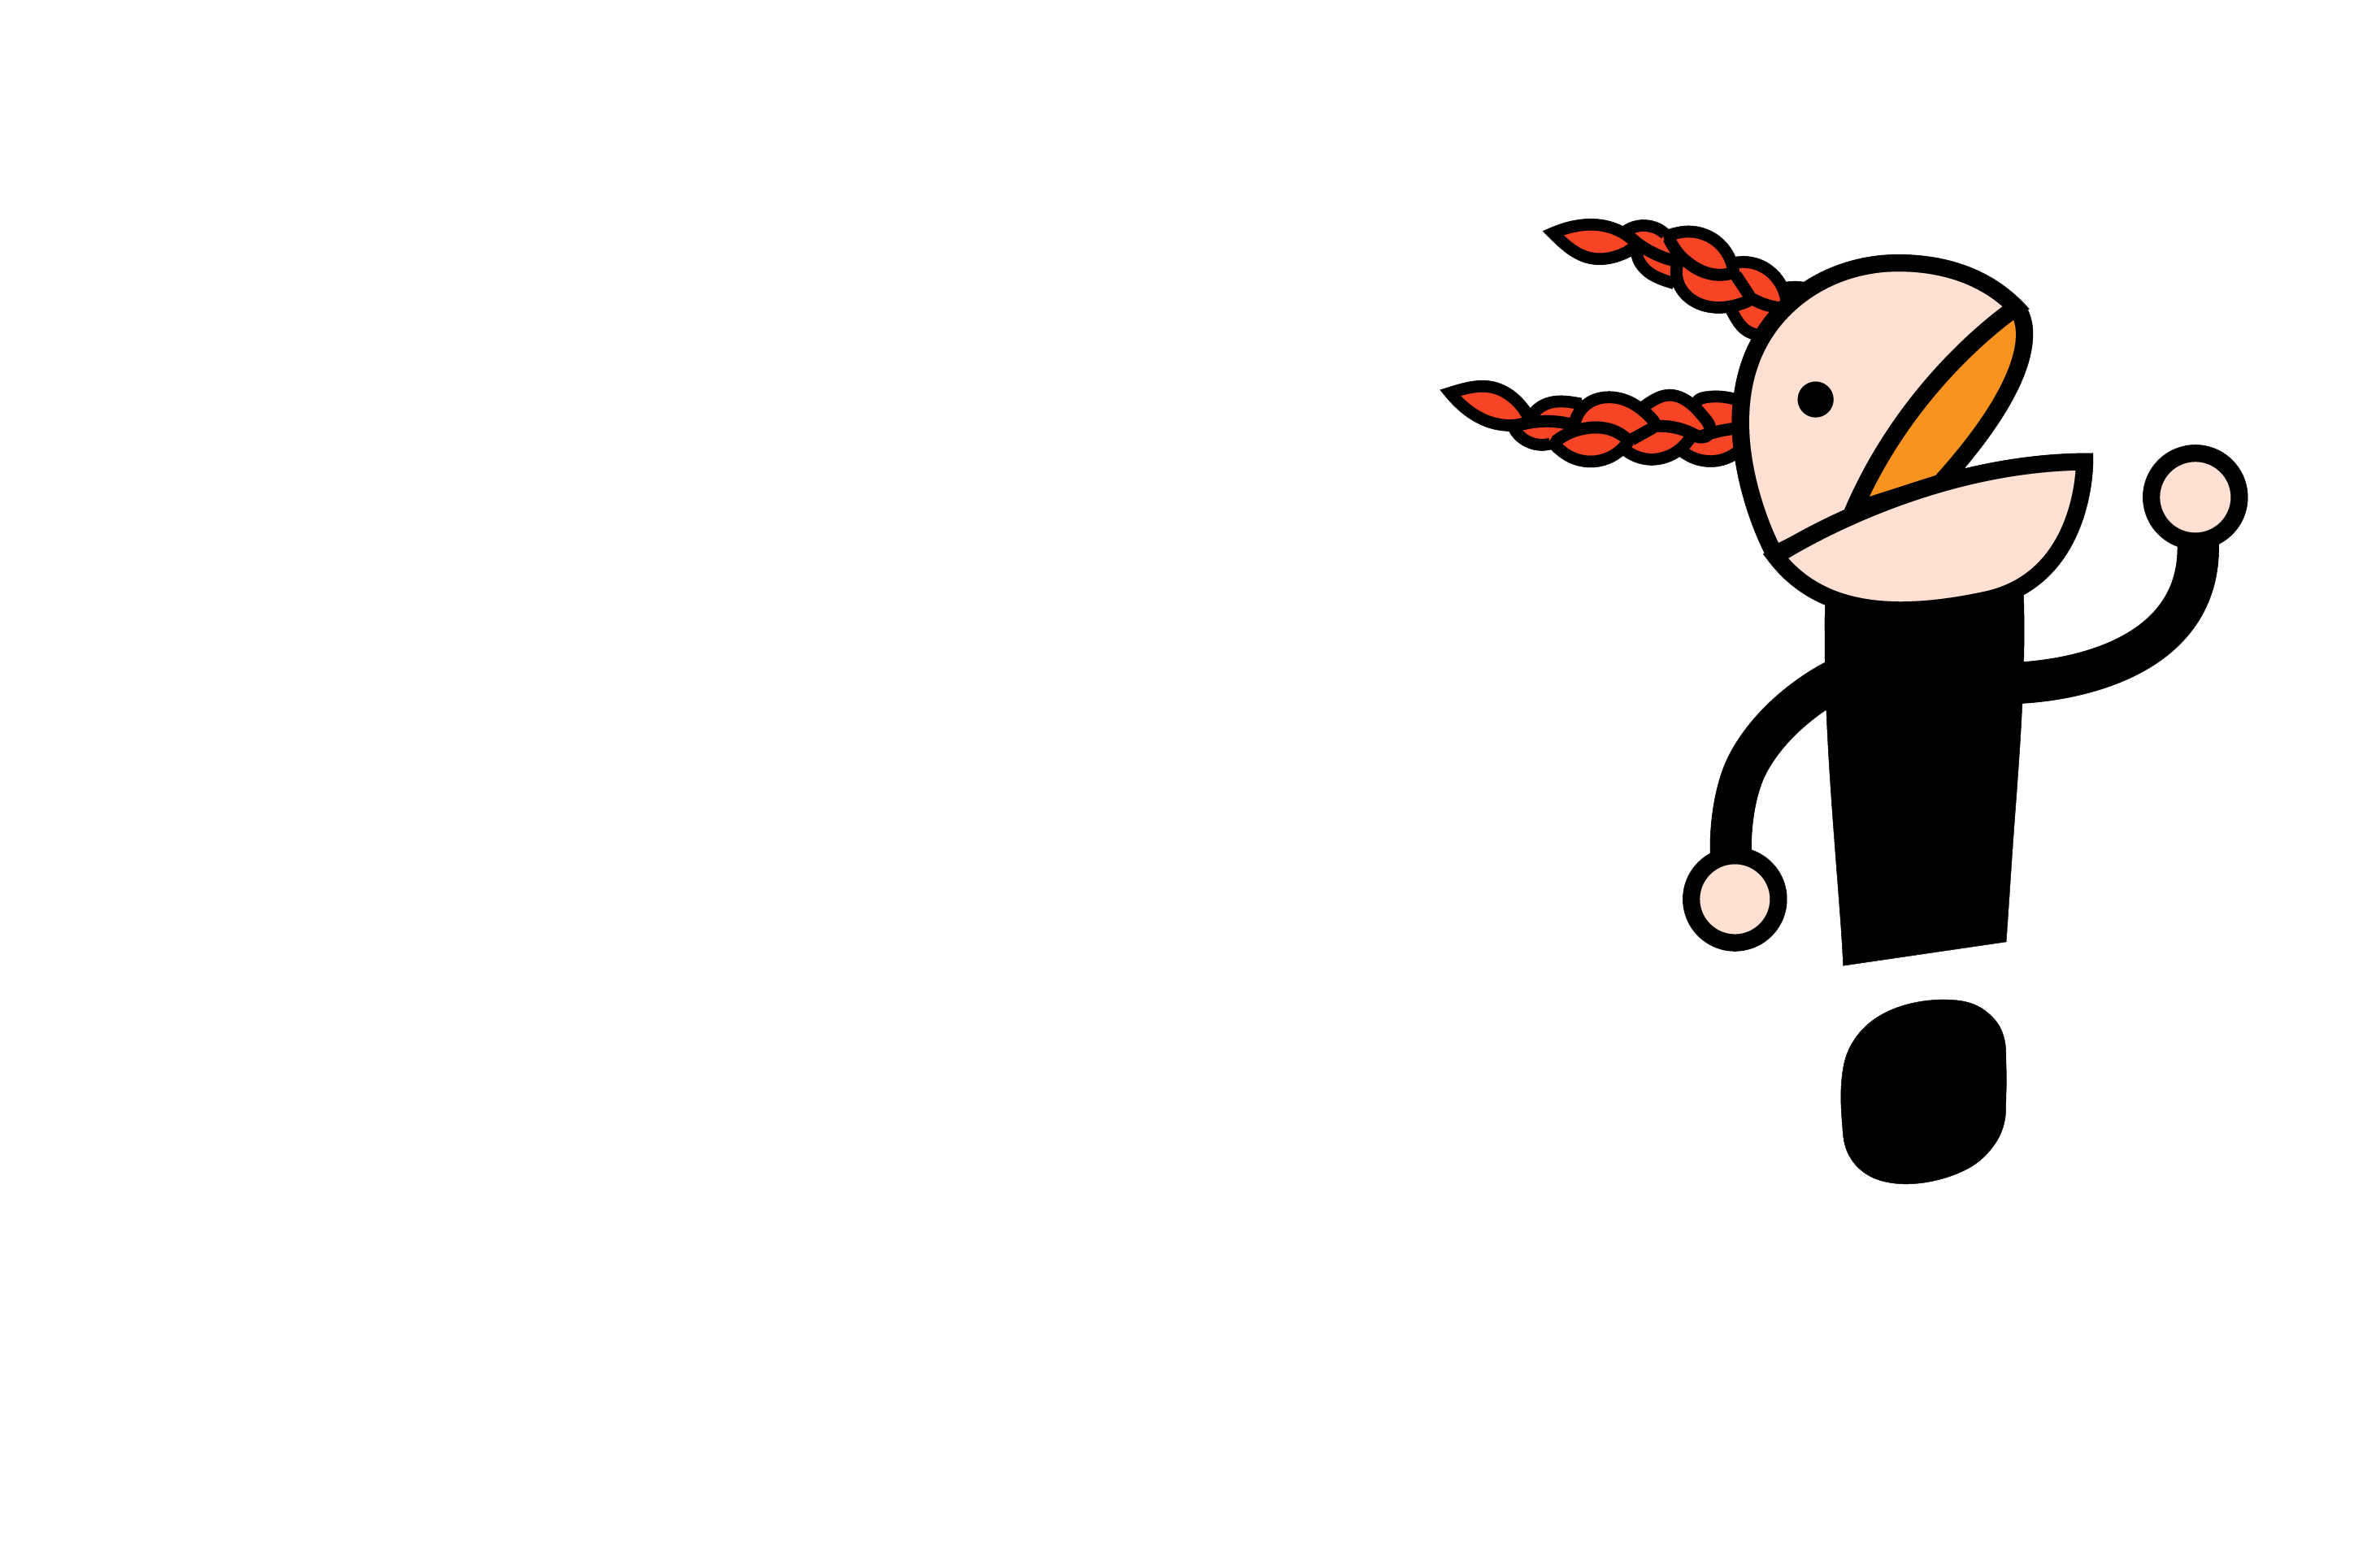 Emma Dorren